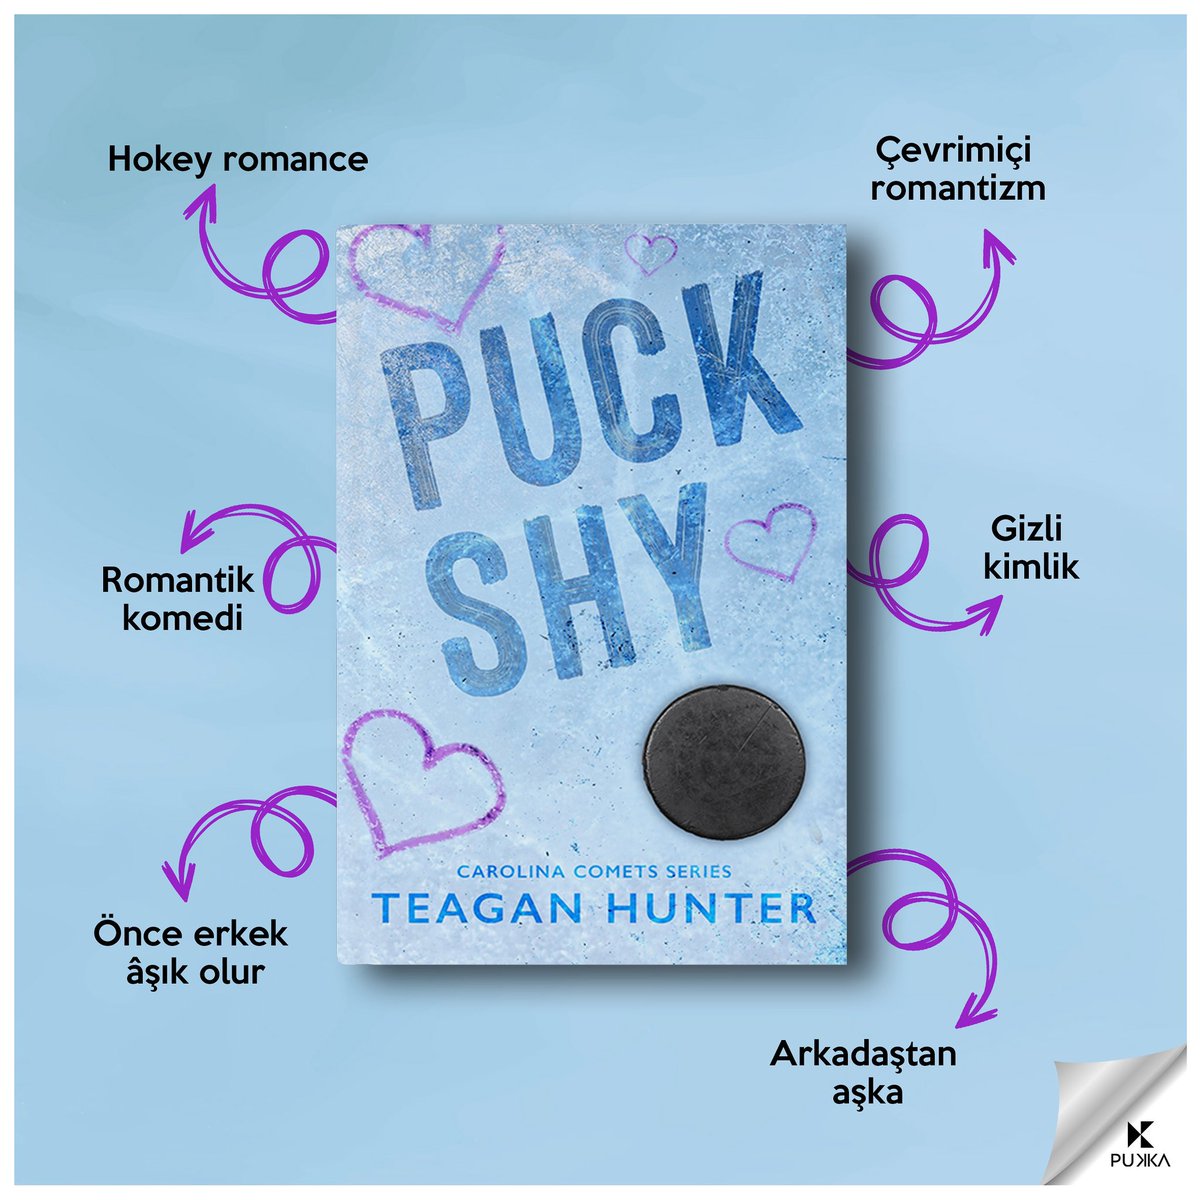 'Puck Shy' eylül ayında sizlerle buluşturacağımız kitaplarımızdan biri. 🏒

Collin ve Harper'la tanışmaya hazır mısınız? 🩵

#pukkayayınları #teaganhunter #puckshy #carolinacomets